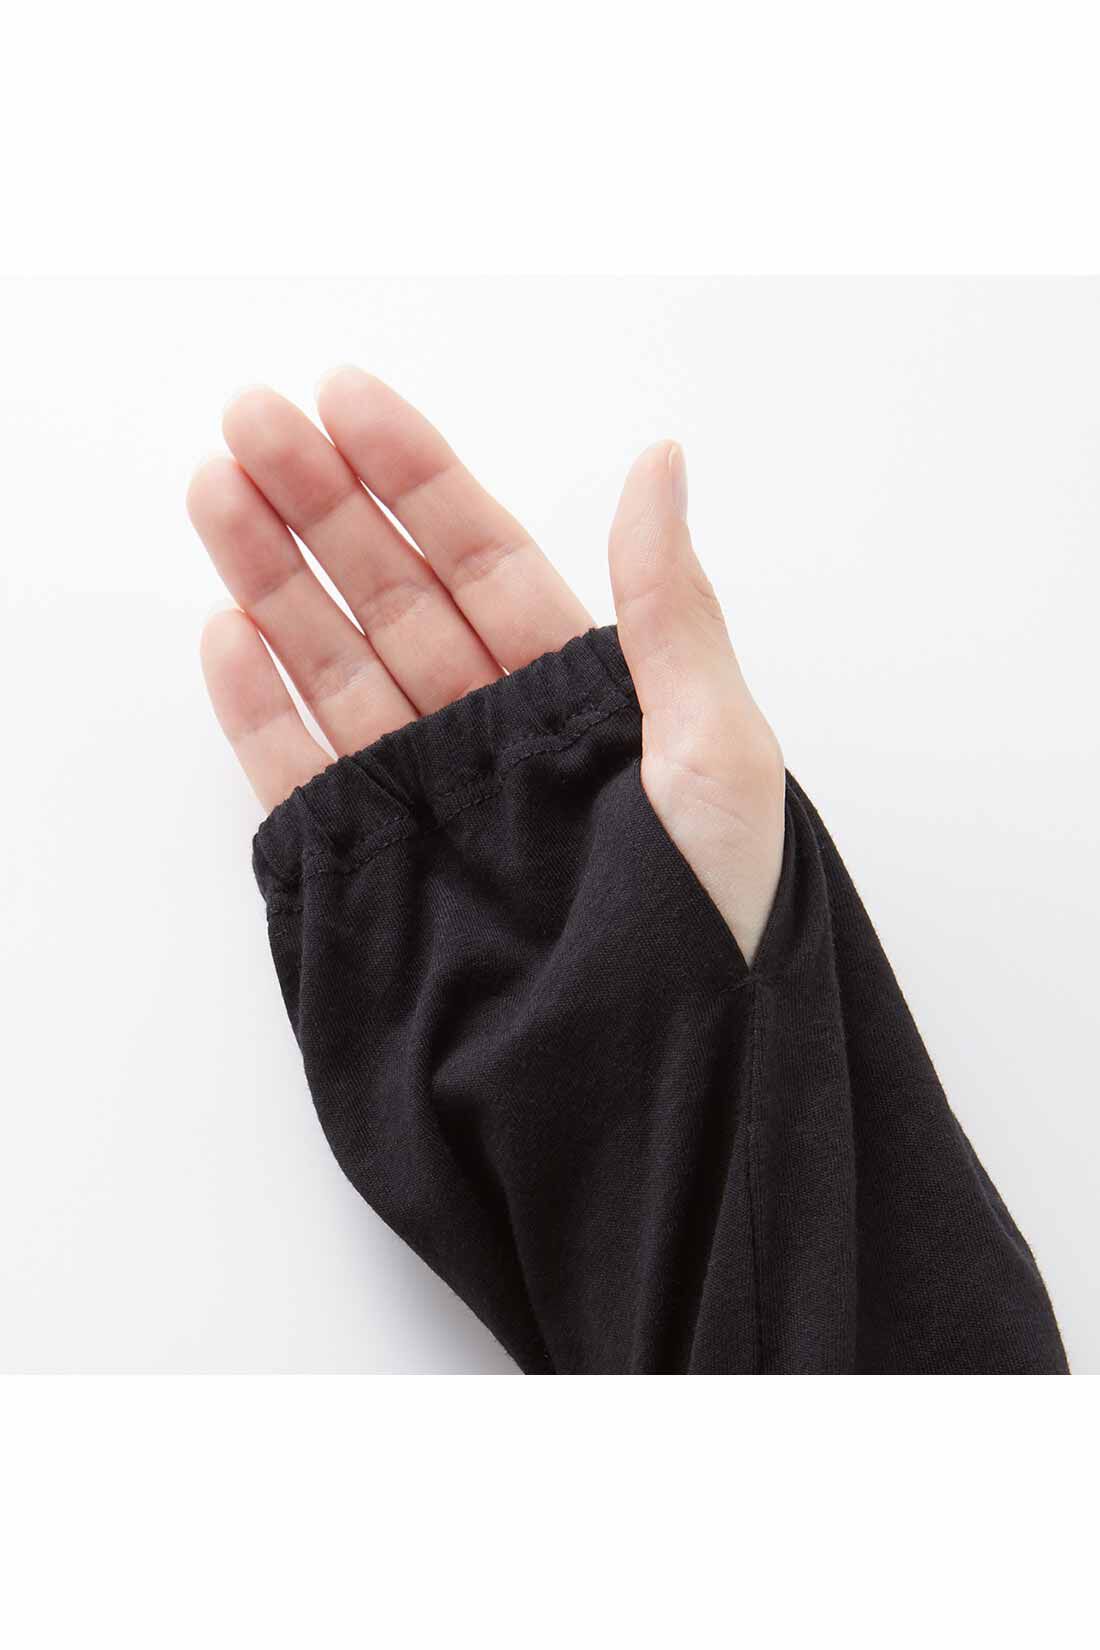 IEDIT|IEDIT[イディット]　ウエストドロストデザインのUVパーカー〈ブラック〉|袖口は親指ホール付きで手の甲までカバー。さらに袖口をゴム仕様に仕上げているので、プッシュアップも自在です。